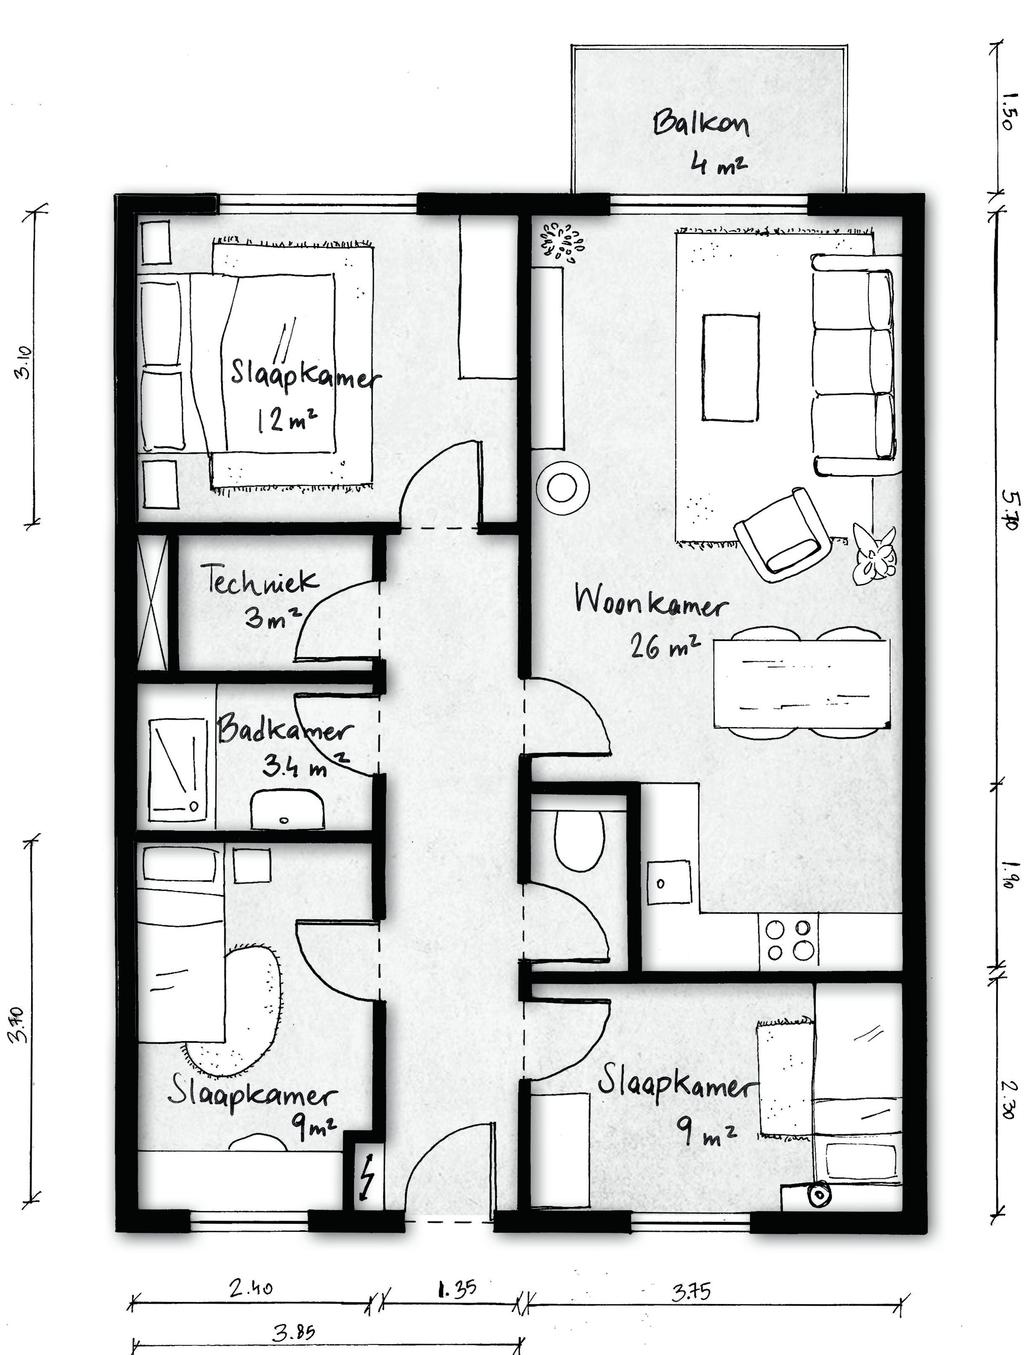 4 kamer appartement Huurprijs indicatie: 650 720,- (prijspeil 2019). De appartementen in de U-blokken zijn één meter minder diep.